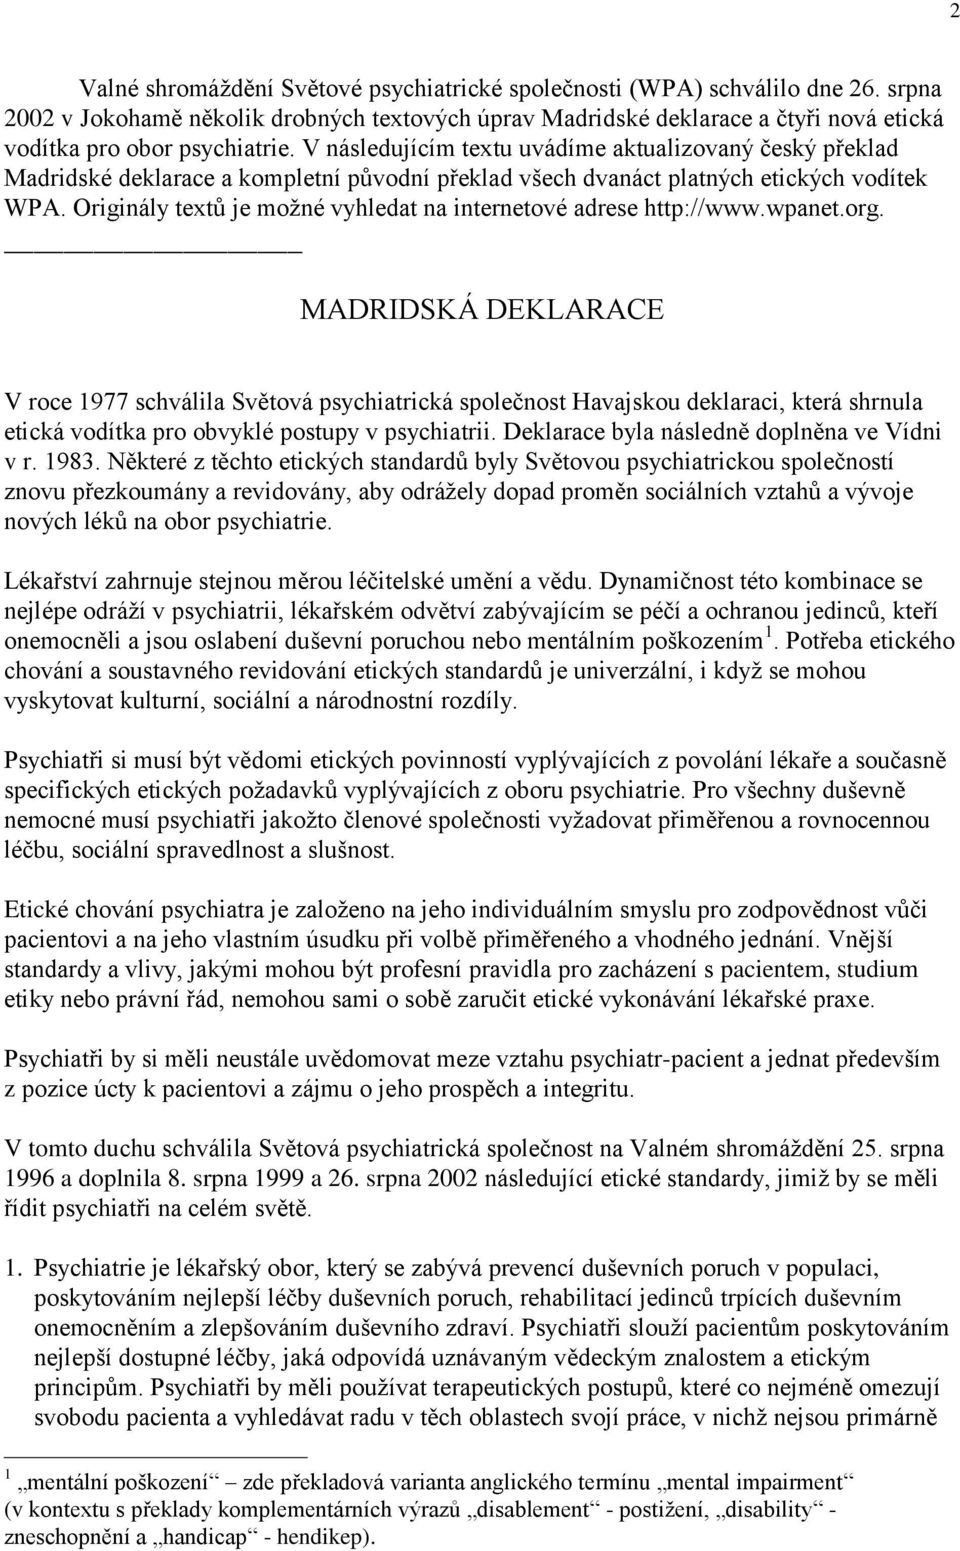 V následujícím textu uvádíme aktualizovaný český překlad Madridské deklarace a kompletní původní překlad všech dvanáct platných etických vodítek WPA.